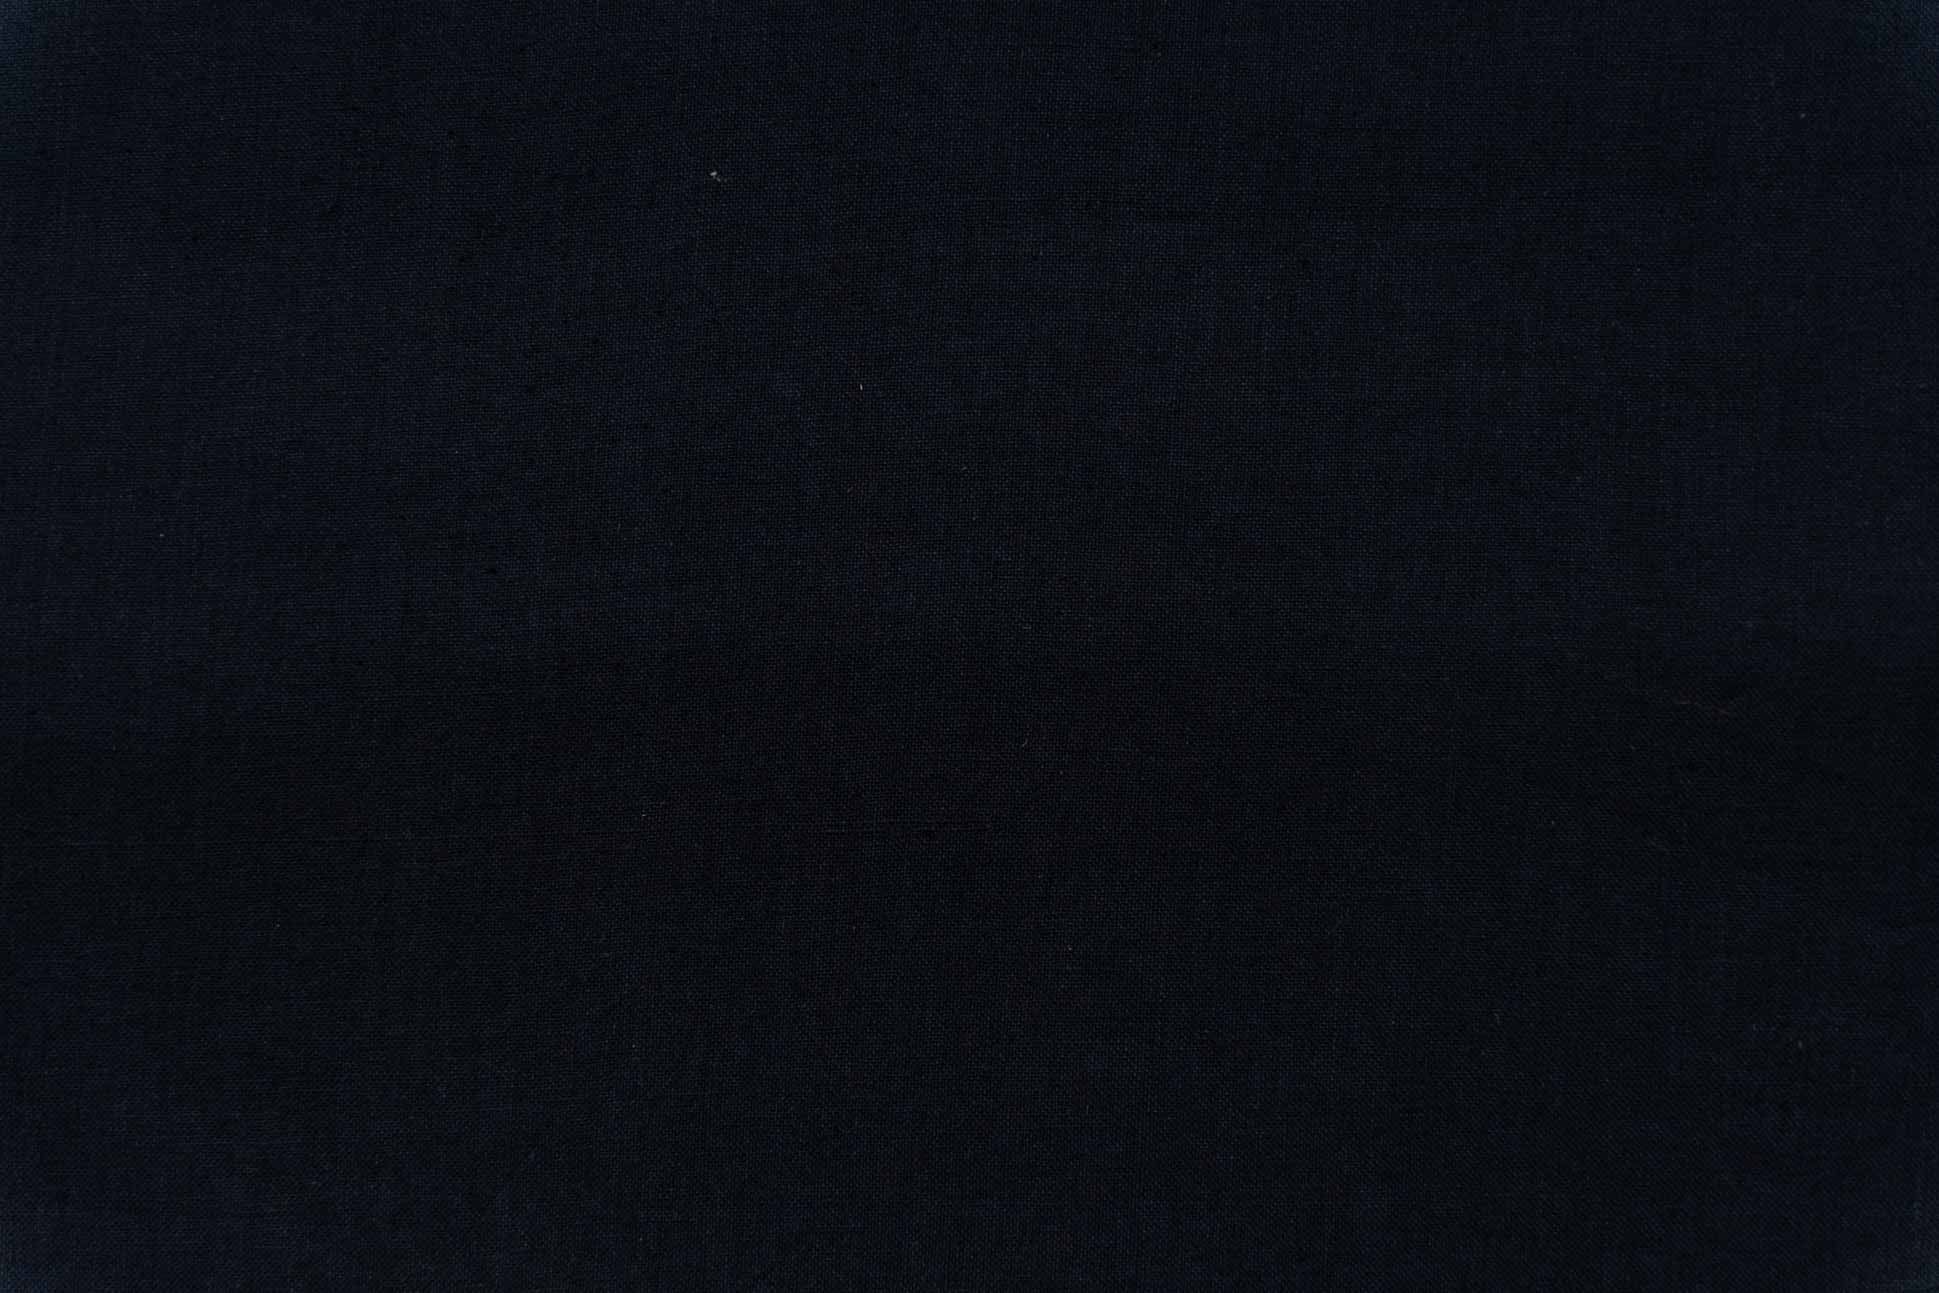 Jet Black Khari Cotton Fabric